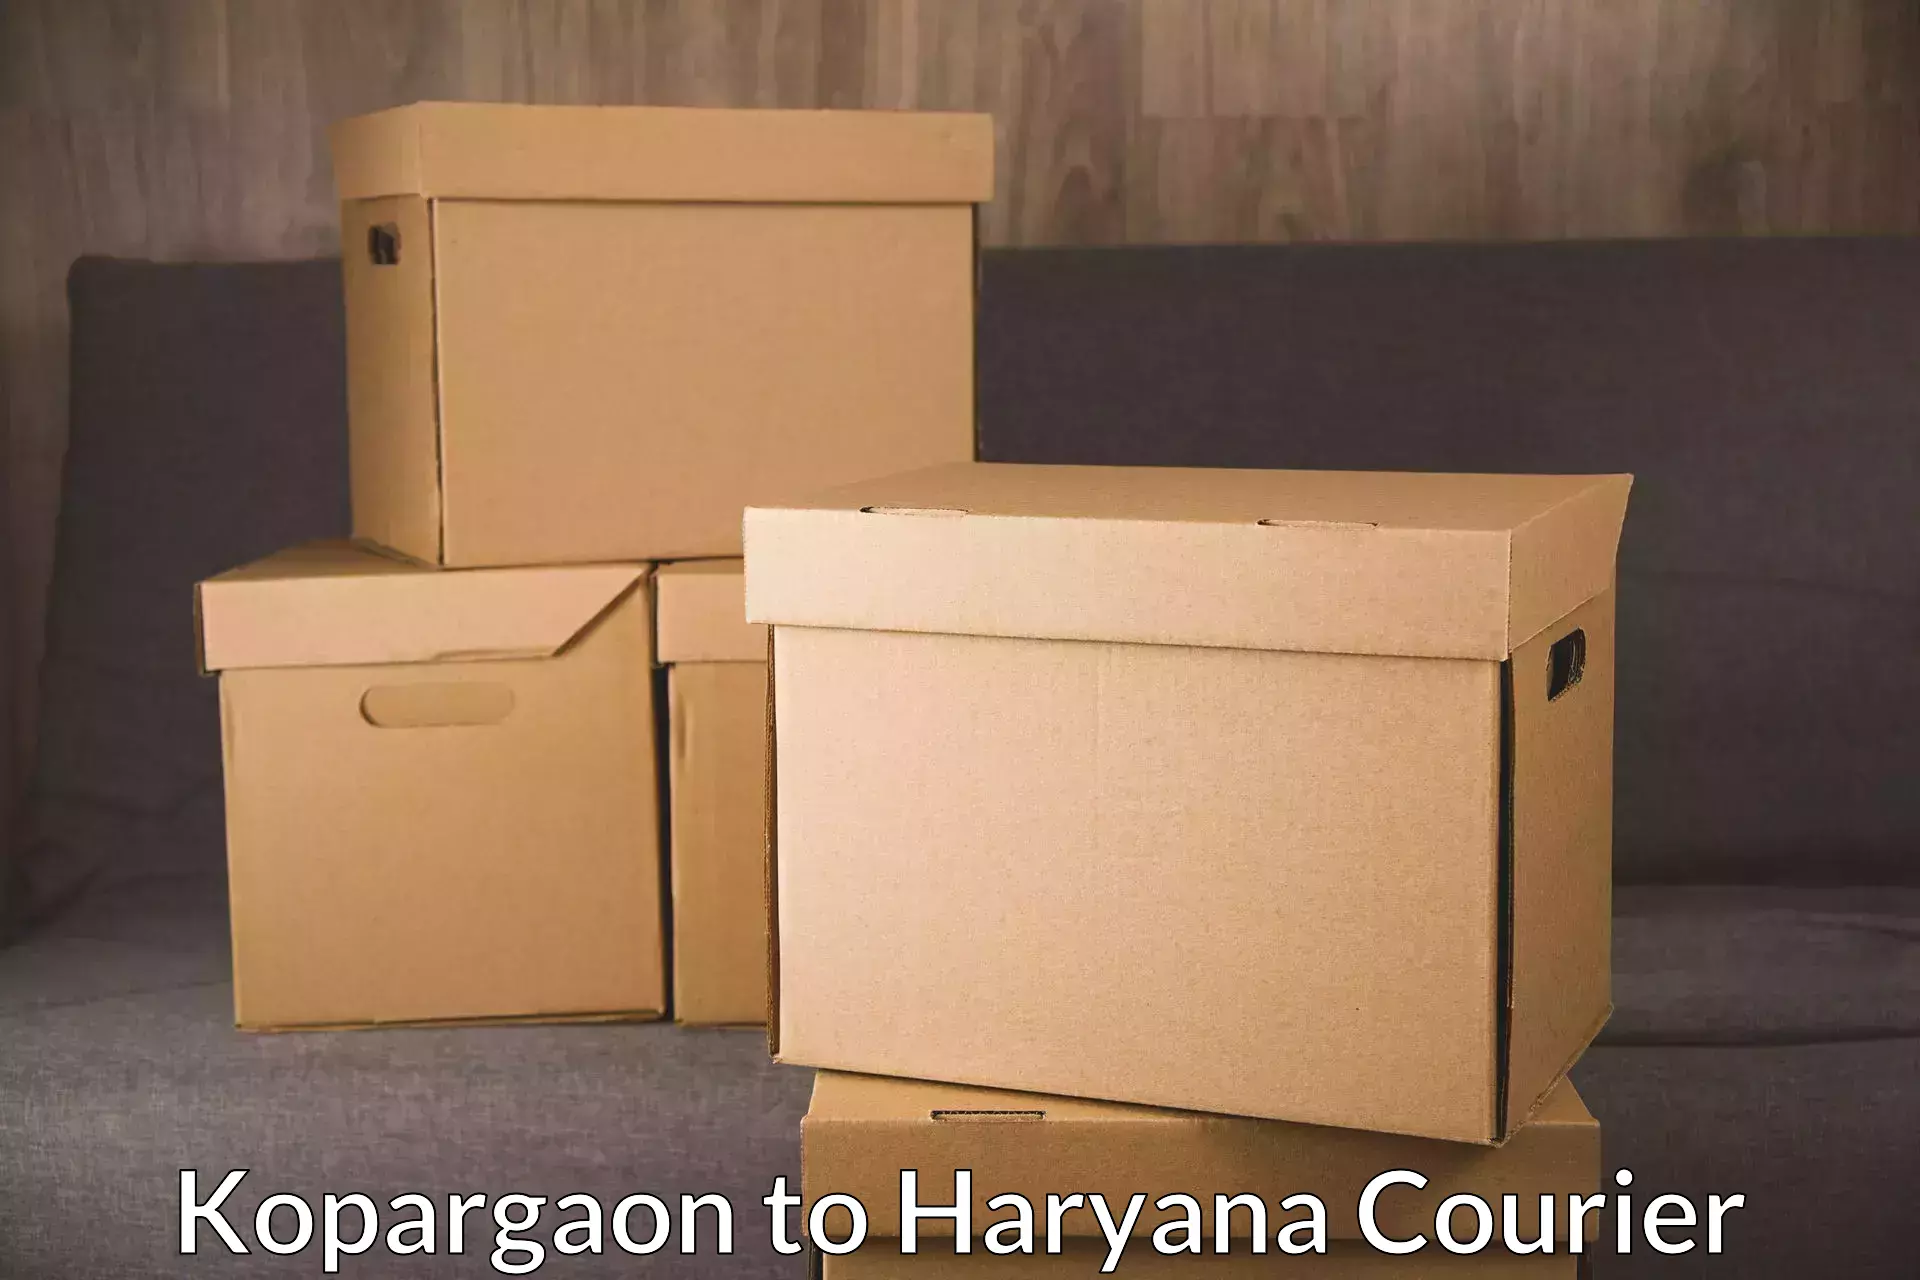 Courier service comparison Kopargaon to Gurgaon